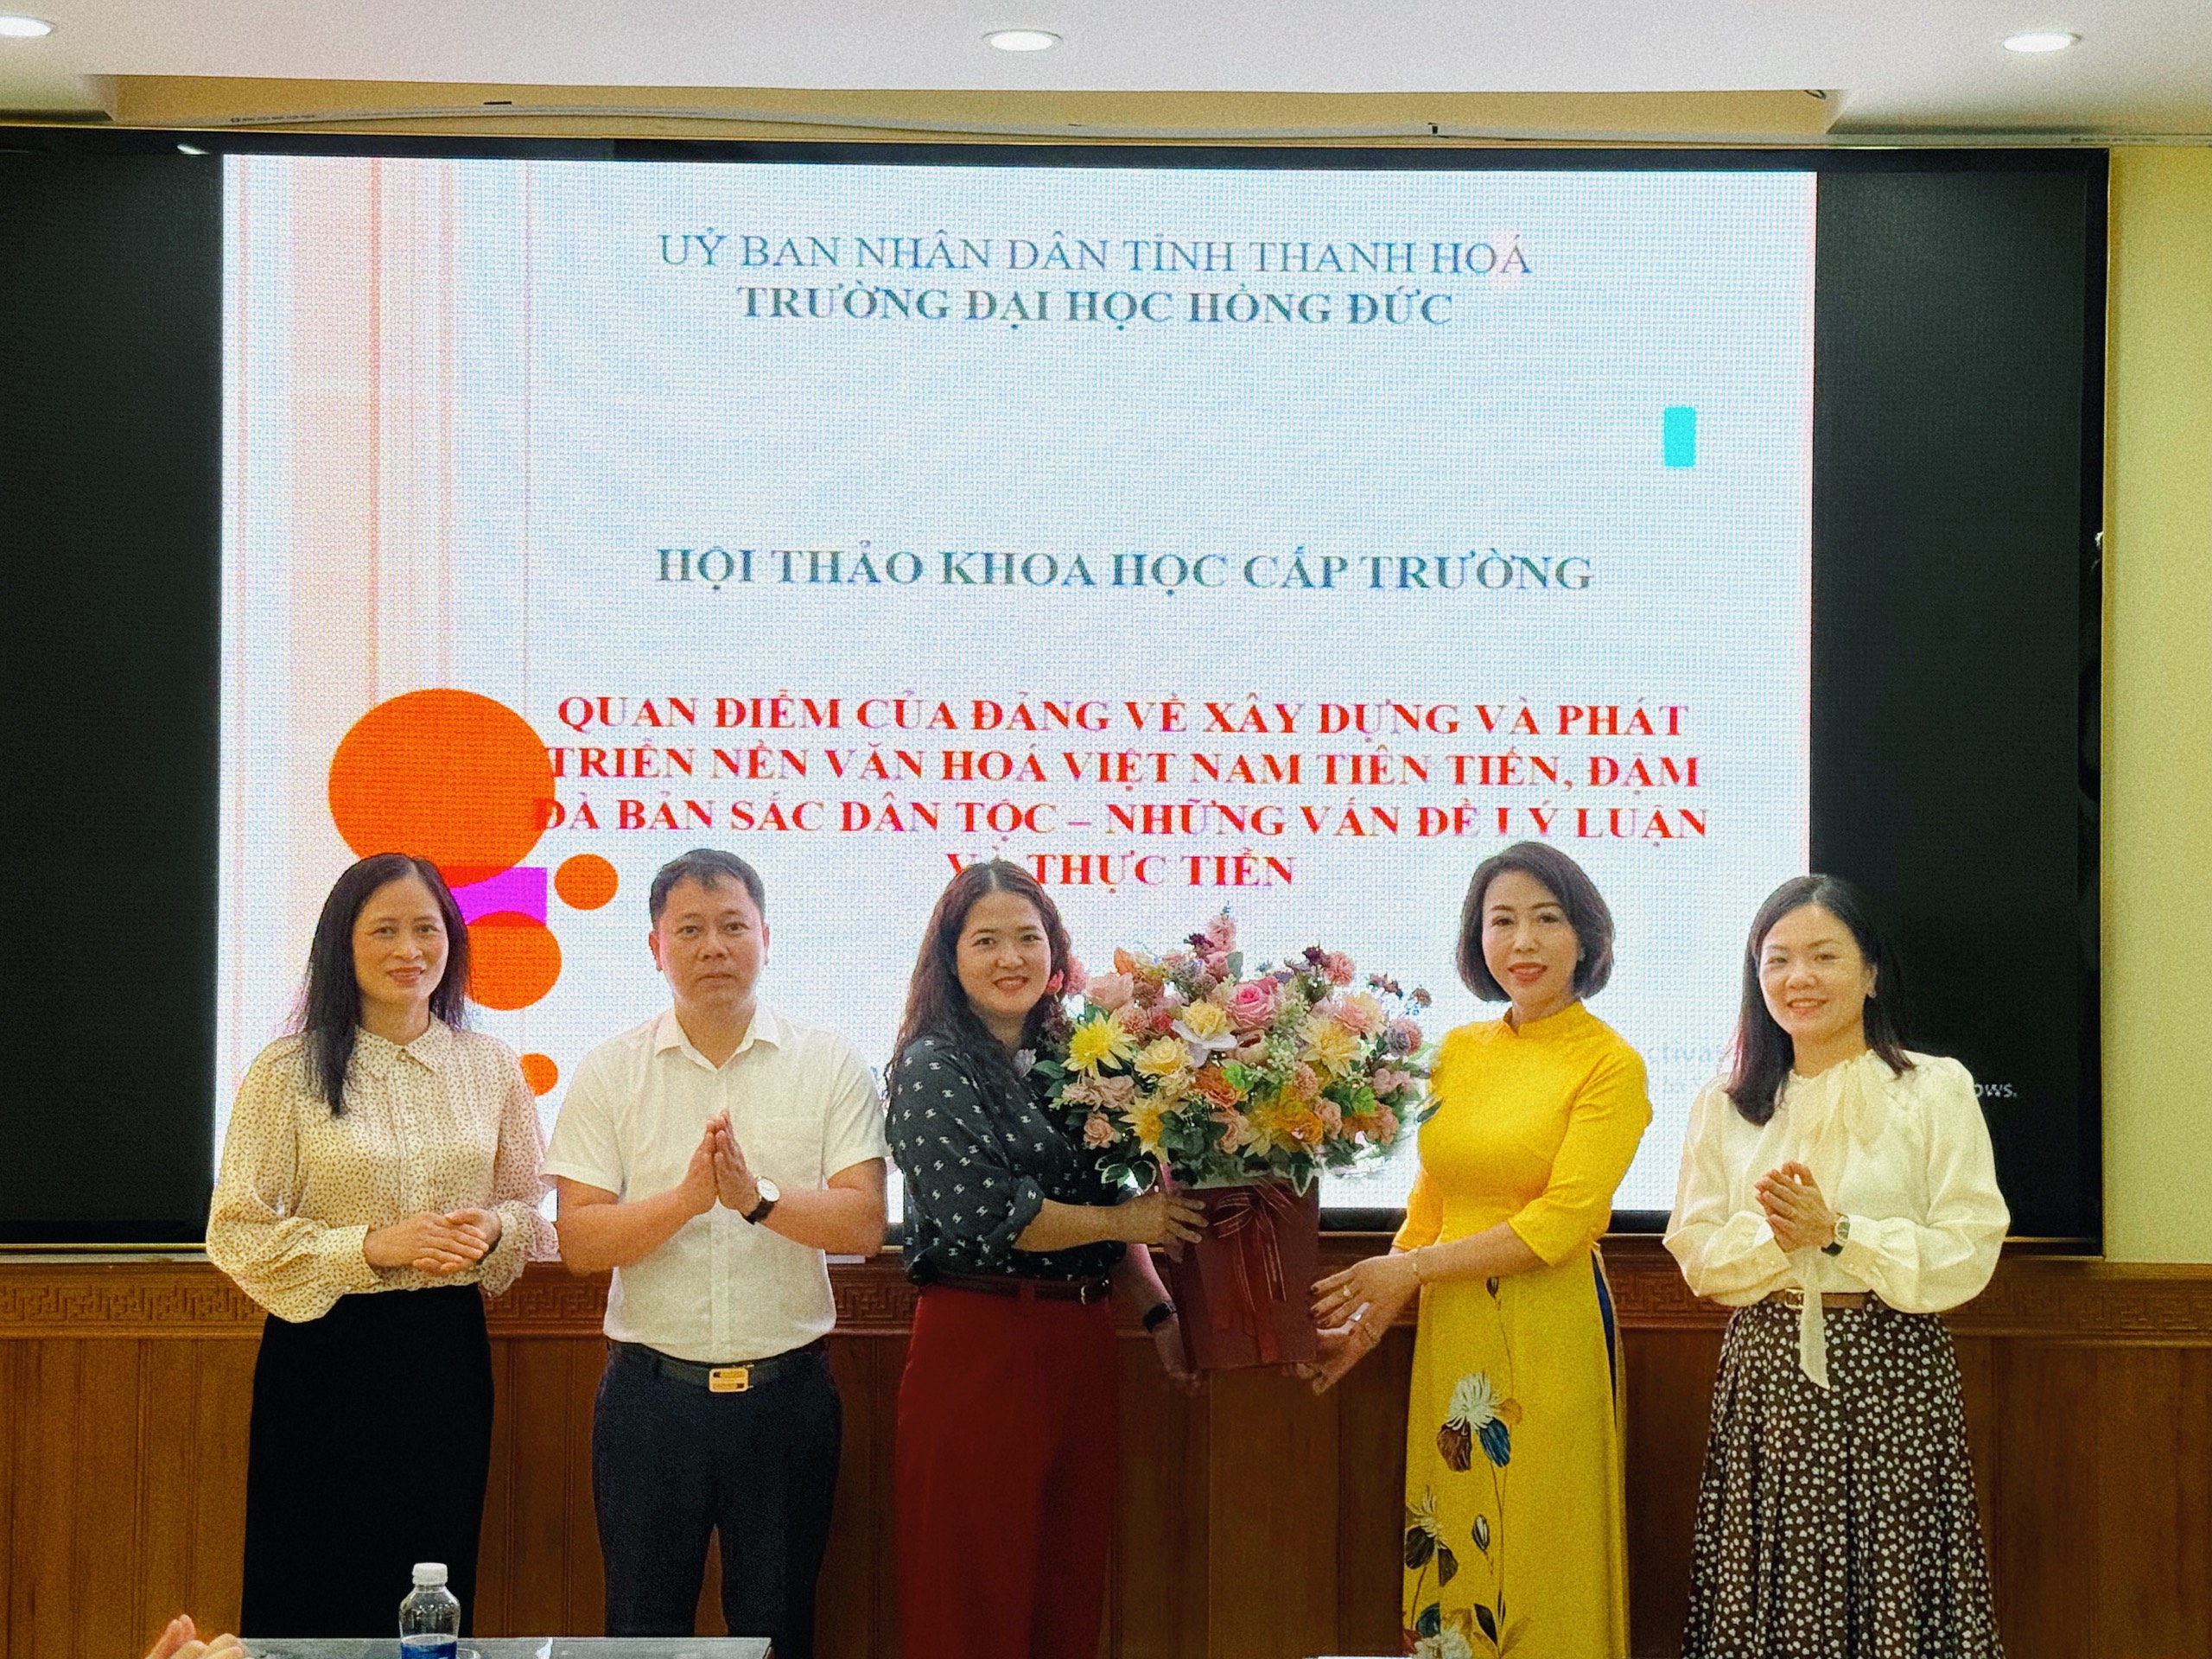 Hội thảo khoa học cấp Trường: “Quan điểm của Đảng về xây dựng và phát triển nền văn hóa Việt Nam, tiên tiến, đậm đà bản sắc dân tộc - Những vấn đề lý luận và thực tiễn”